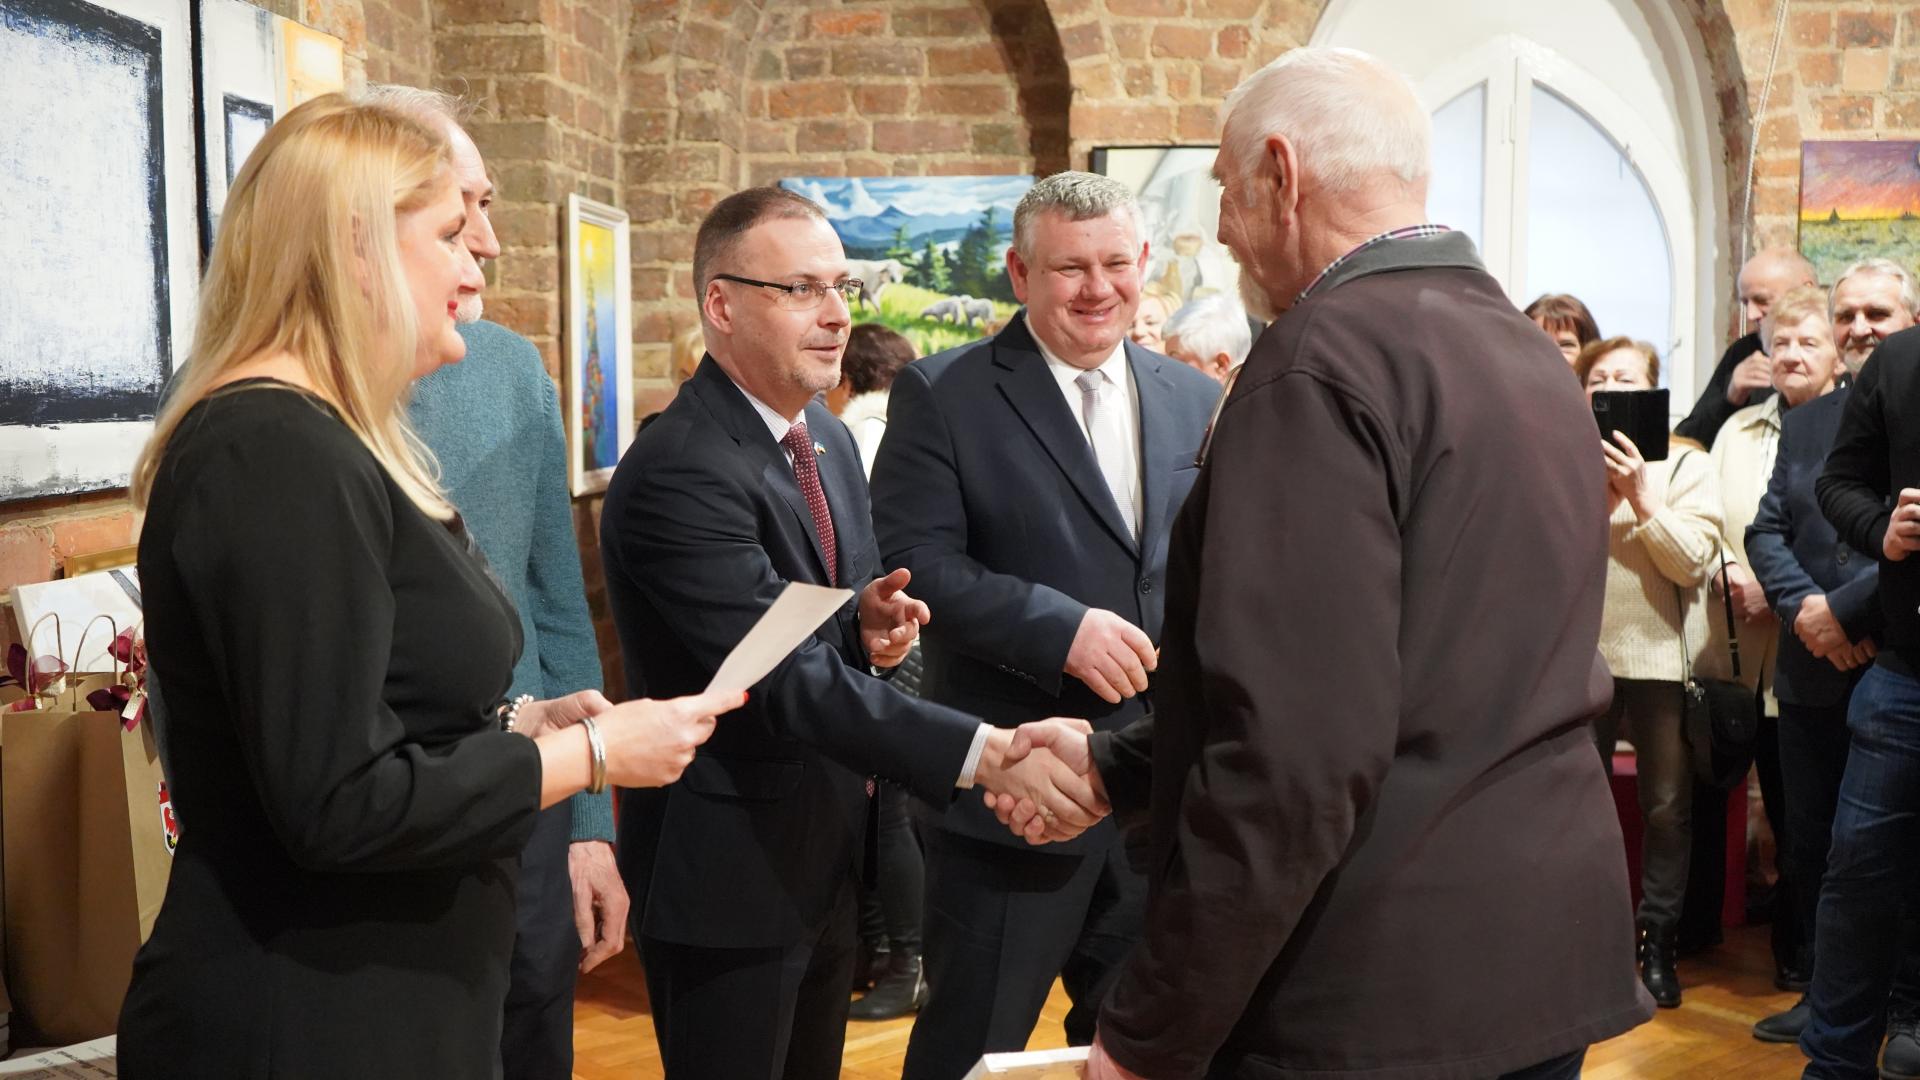 Dyrektor muzeum wręcza nagrodę rzeźbiarzowi, Burmistrz podaje mu dłoń